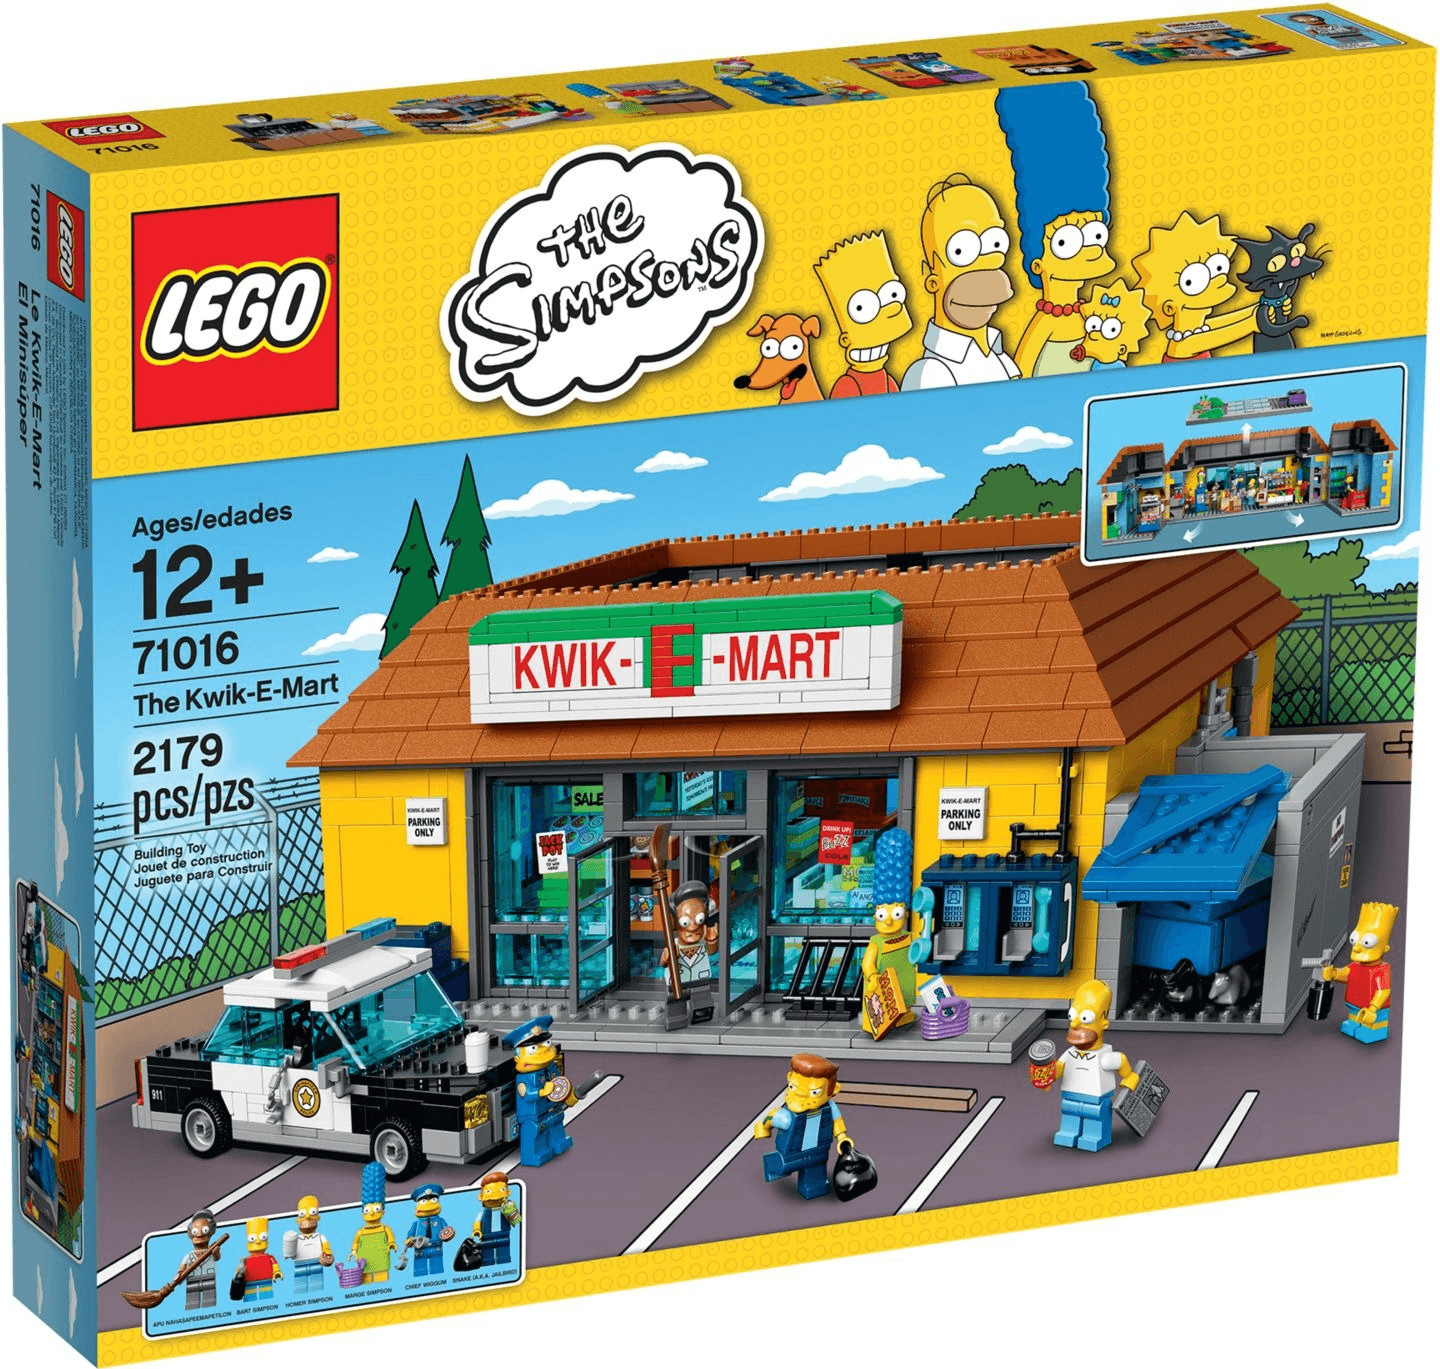 Immagine relativa a LEGO 71016 - Kwik-E-Mart